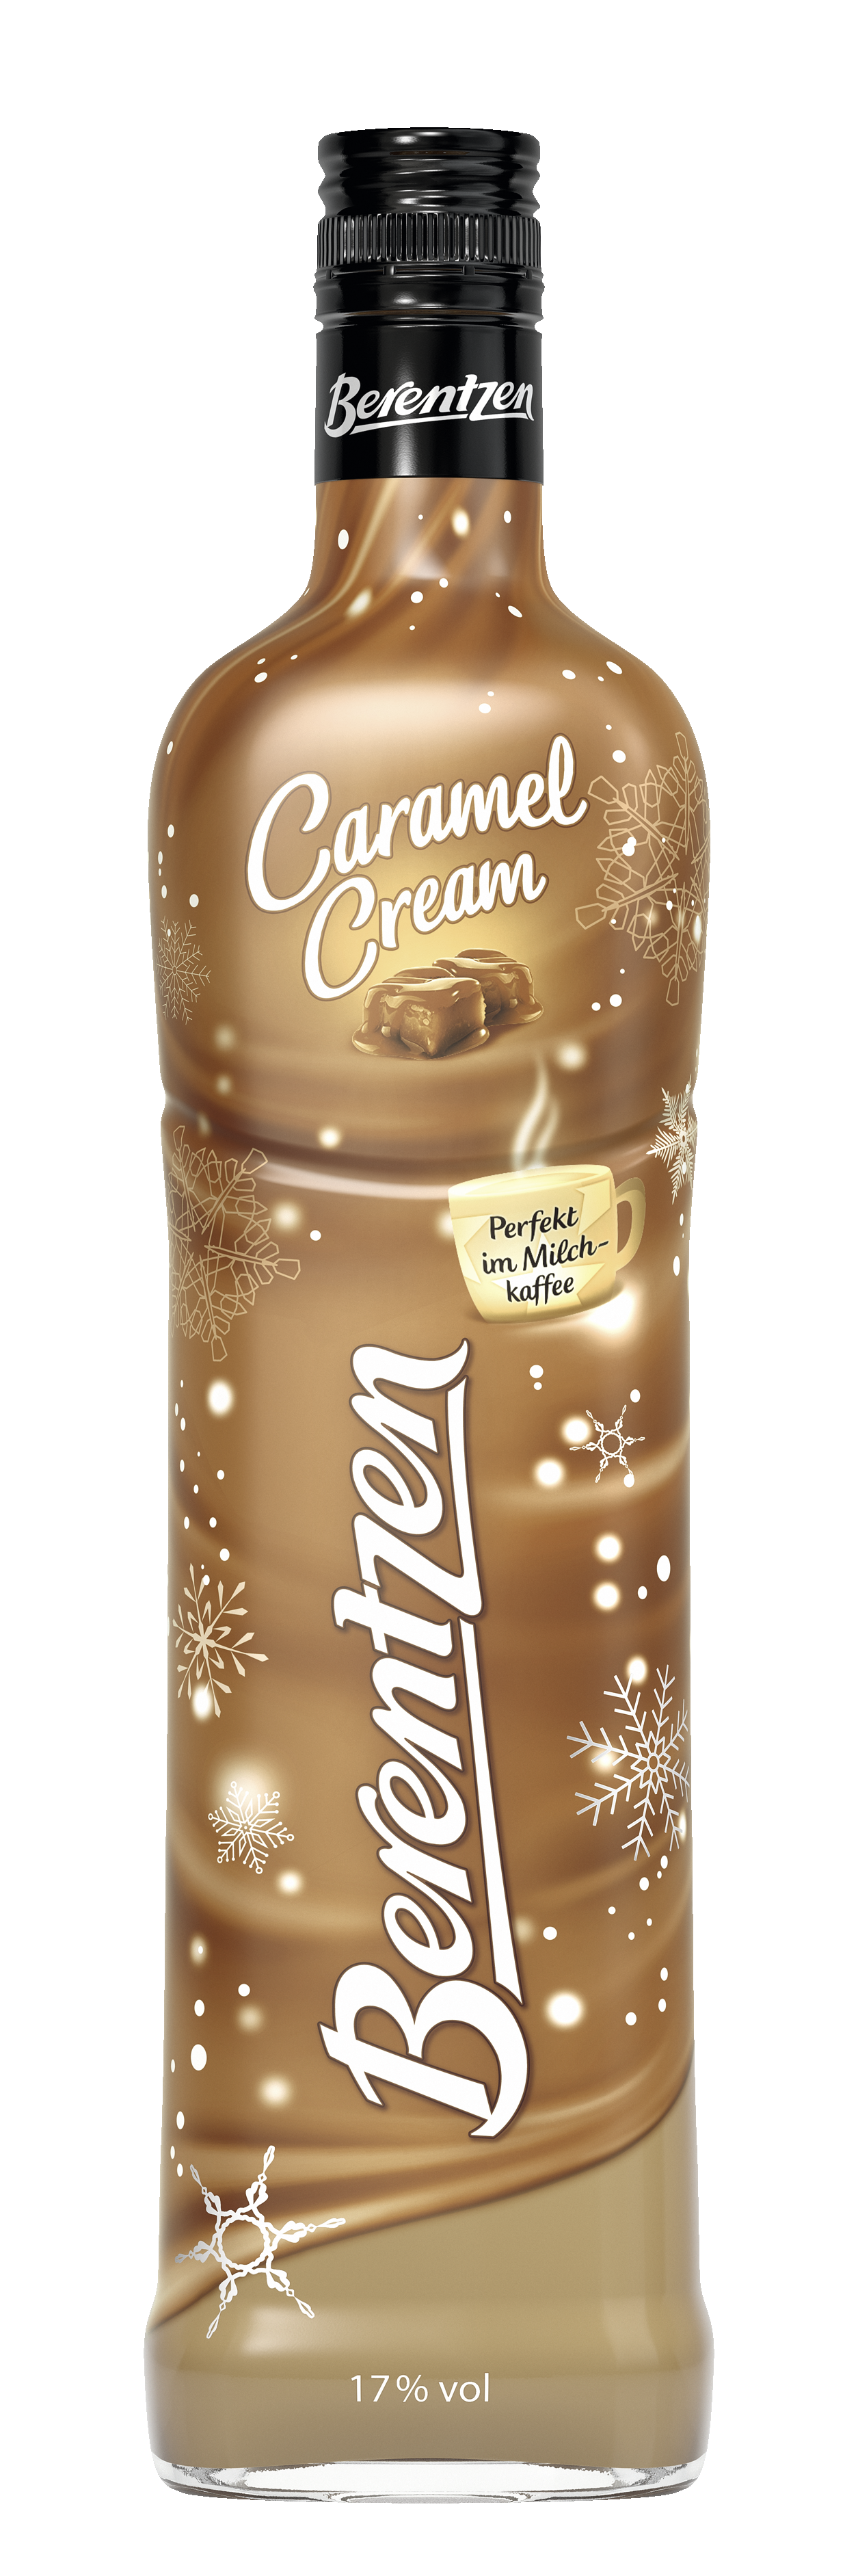 Berentzen - Caramel Cream - Likör 0,7l 17%vol.